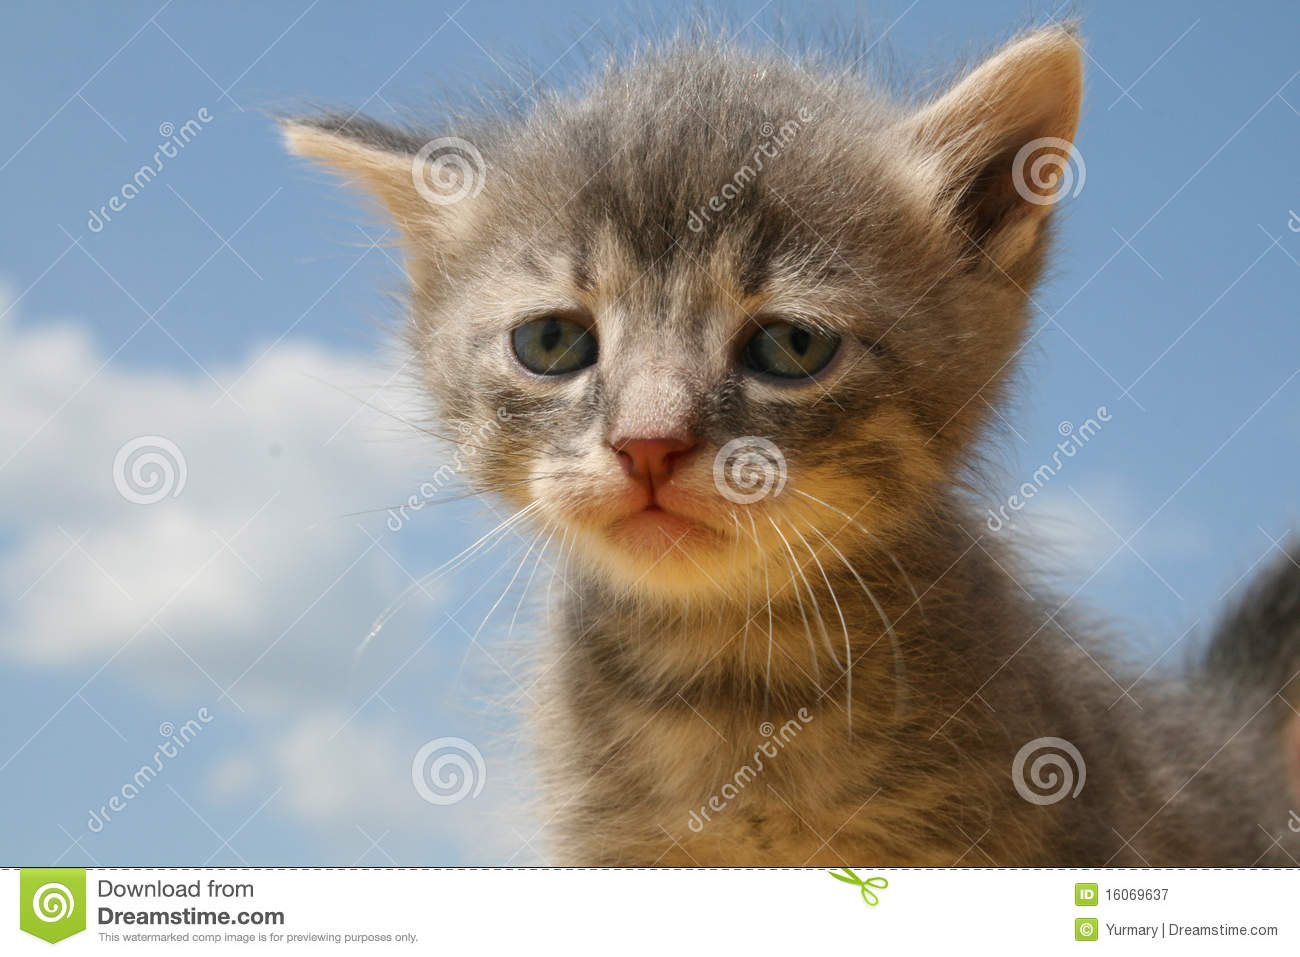 sad-kitty-16069637.jpg